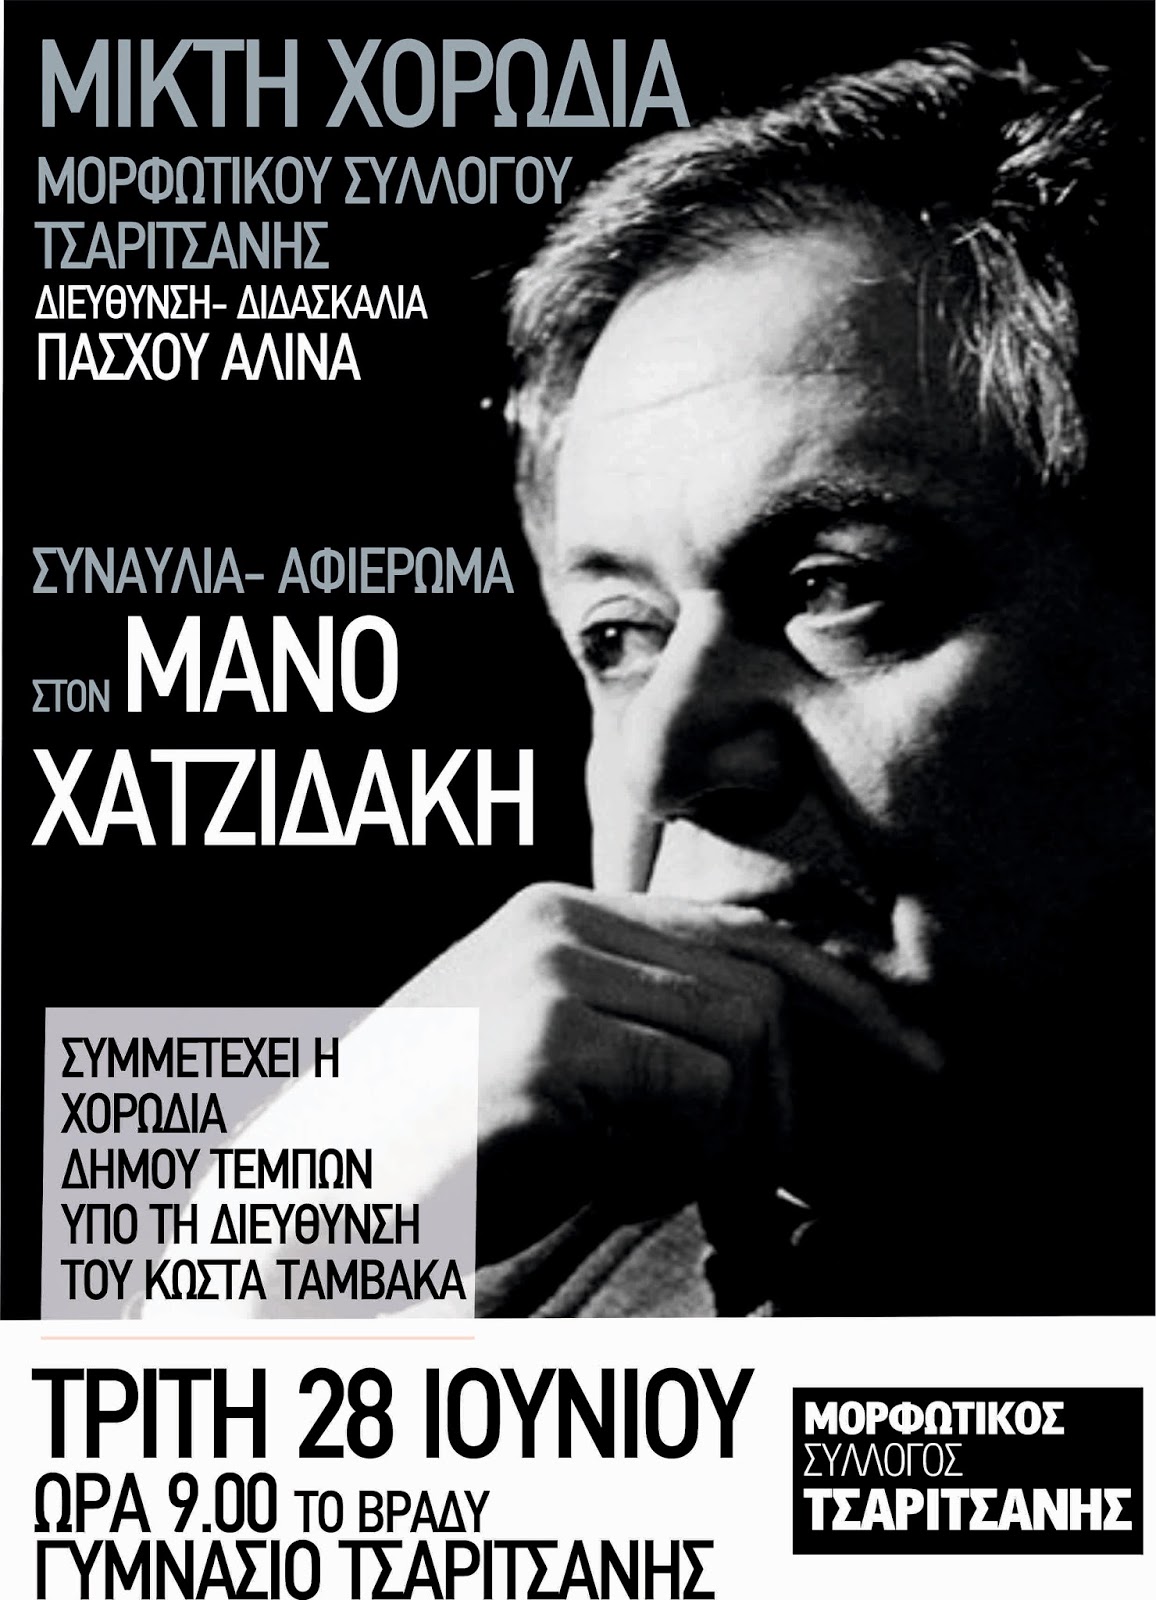 Συναυλία για τον Μάνο Χατζιδάκι στην Τσαριτσάνη